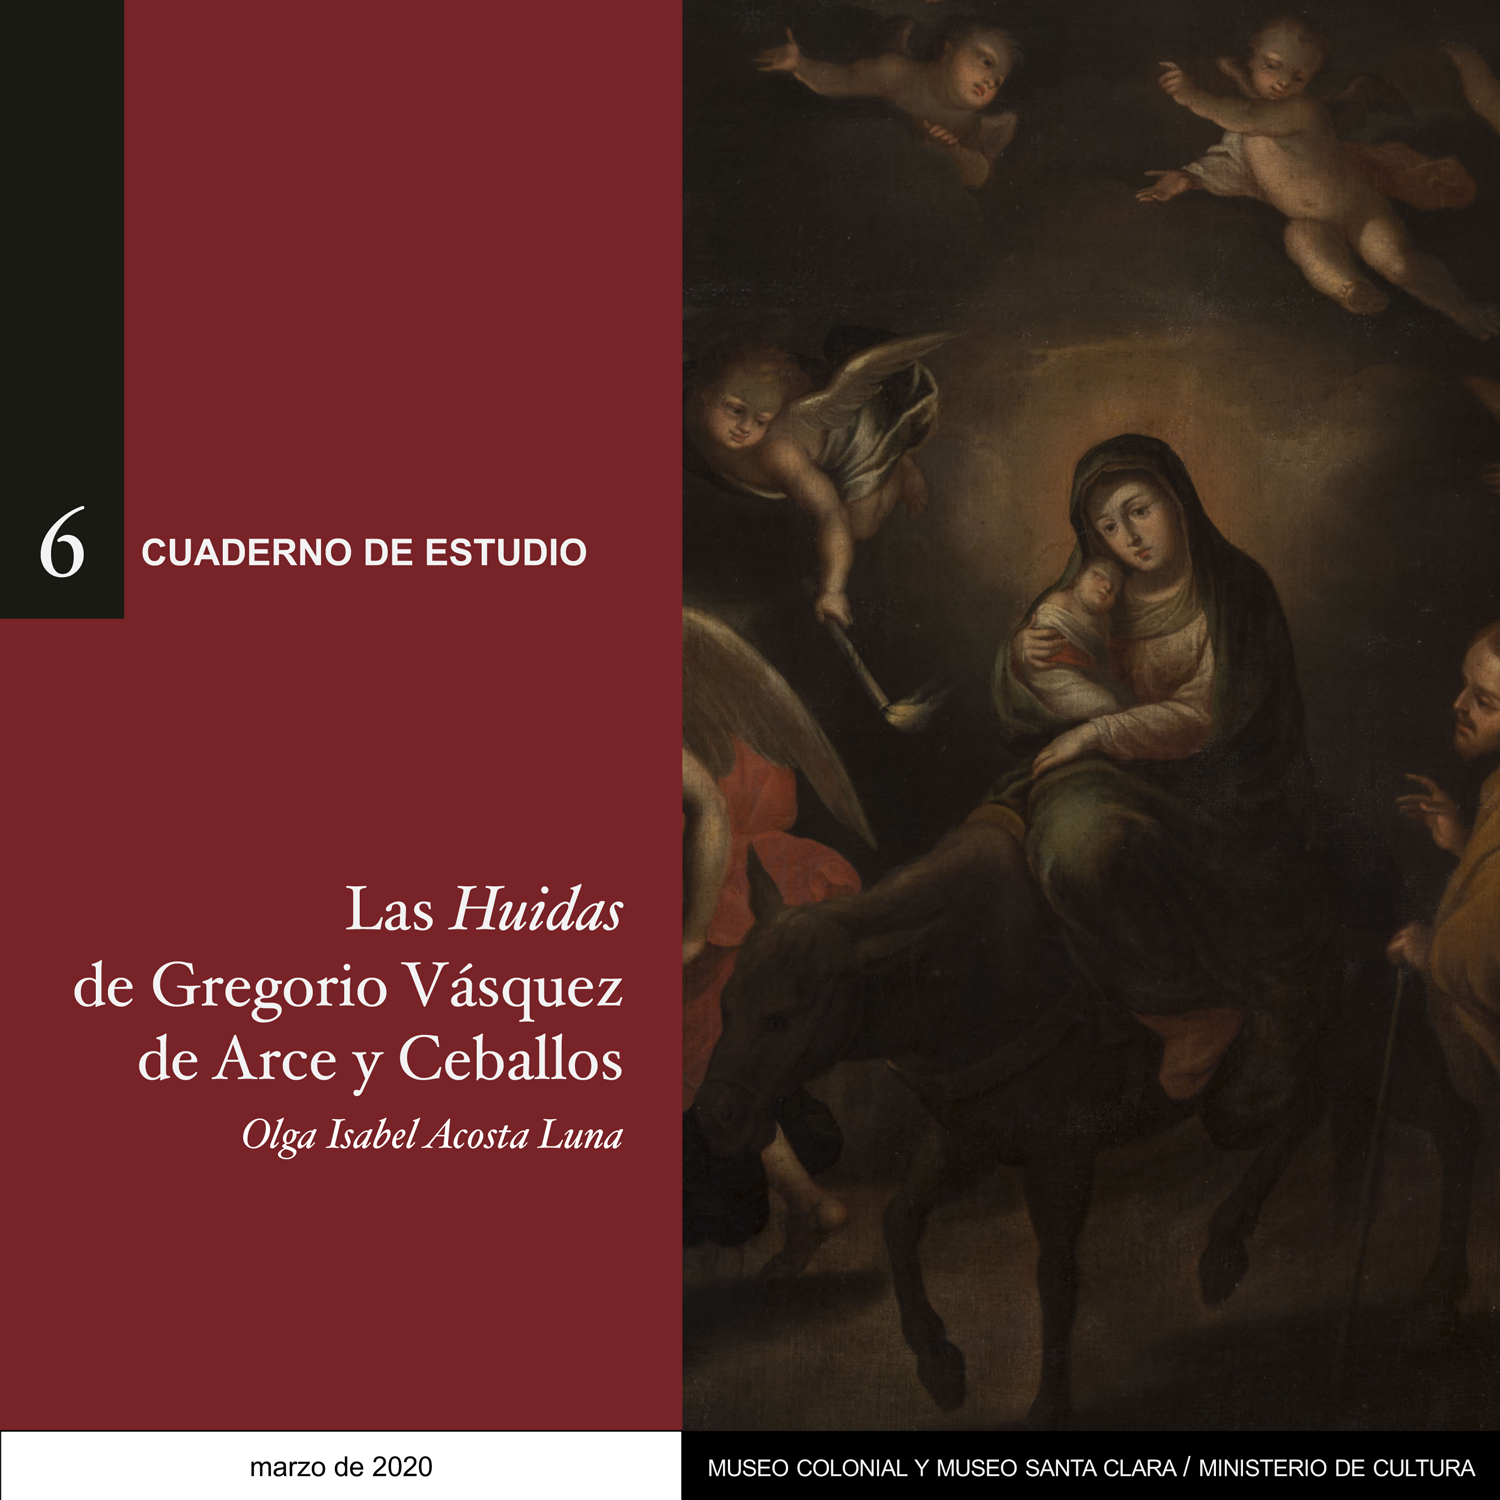 Las Huidas de Gregorio Vásquez de Arce y Ceballos - Cuaderno de estudio No. 6 